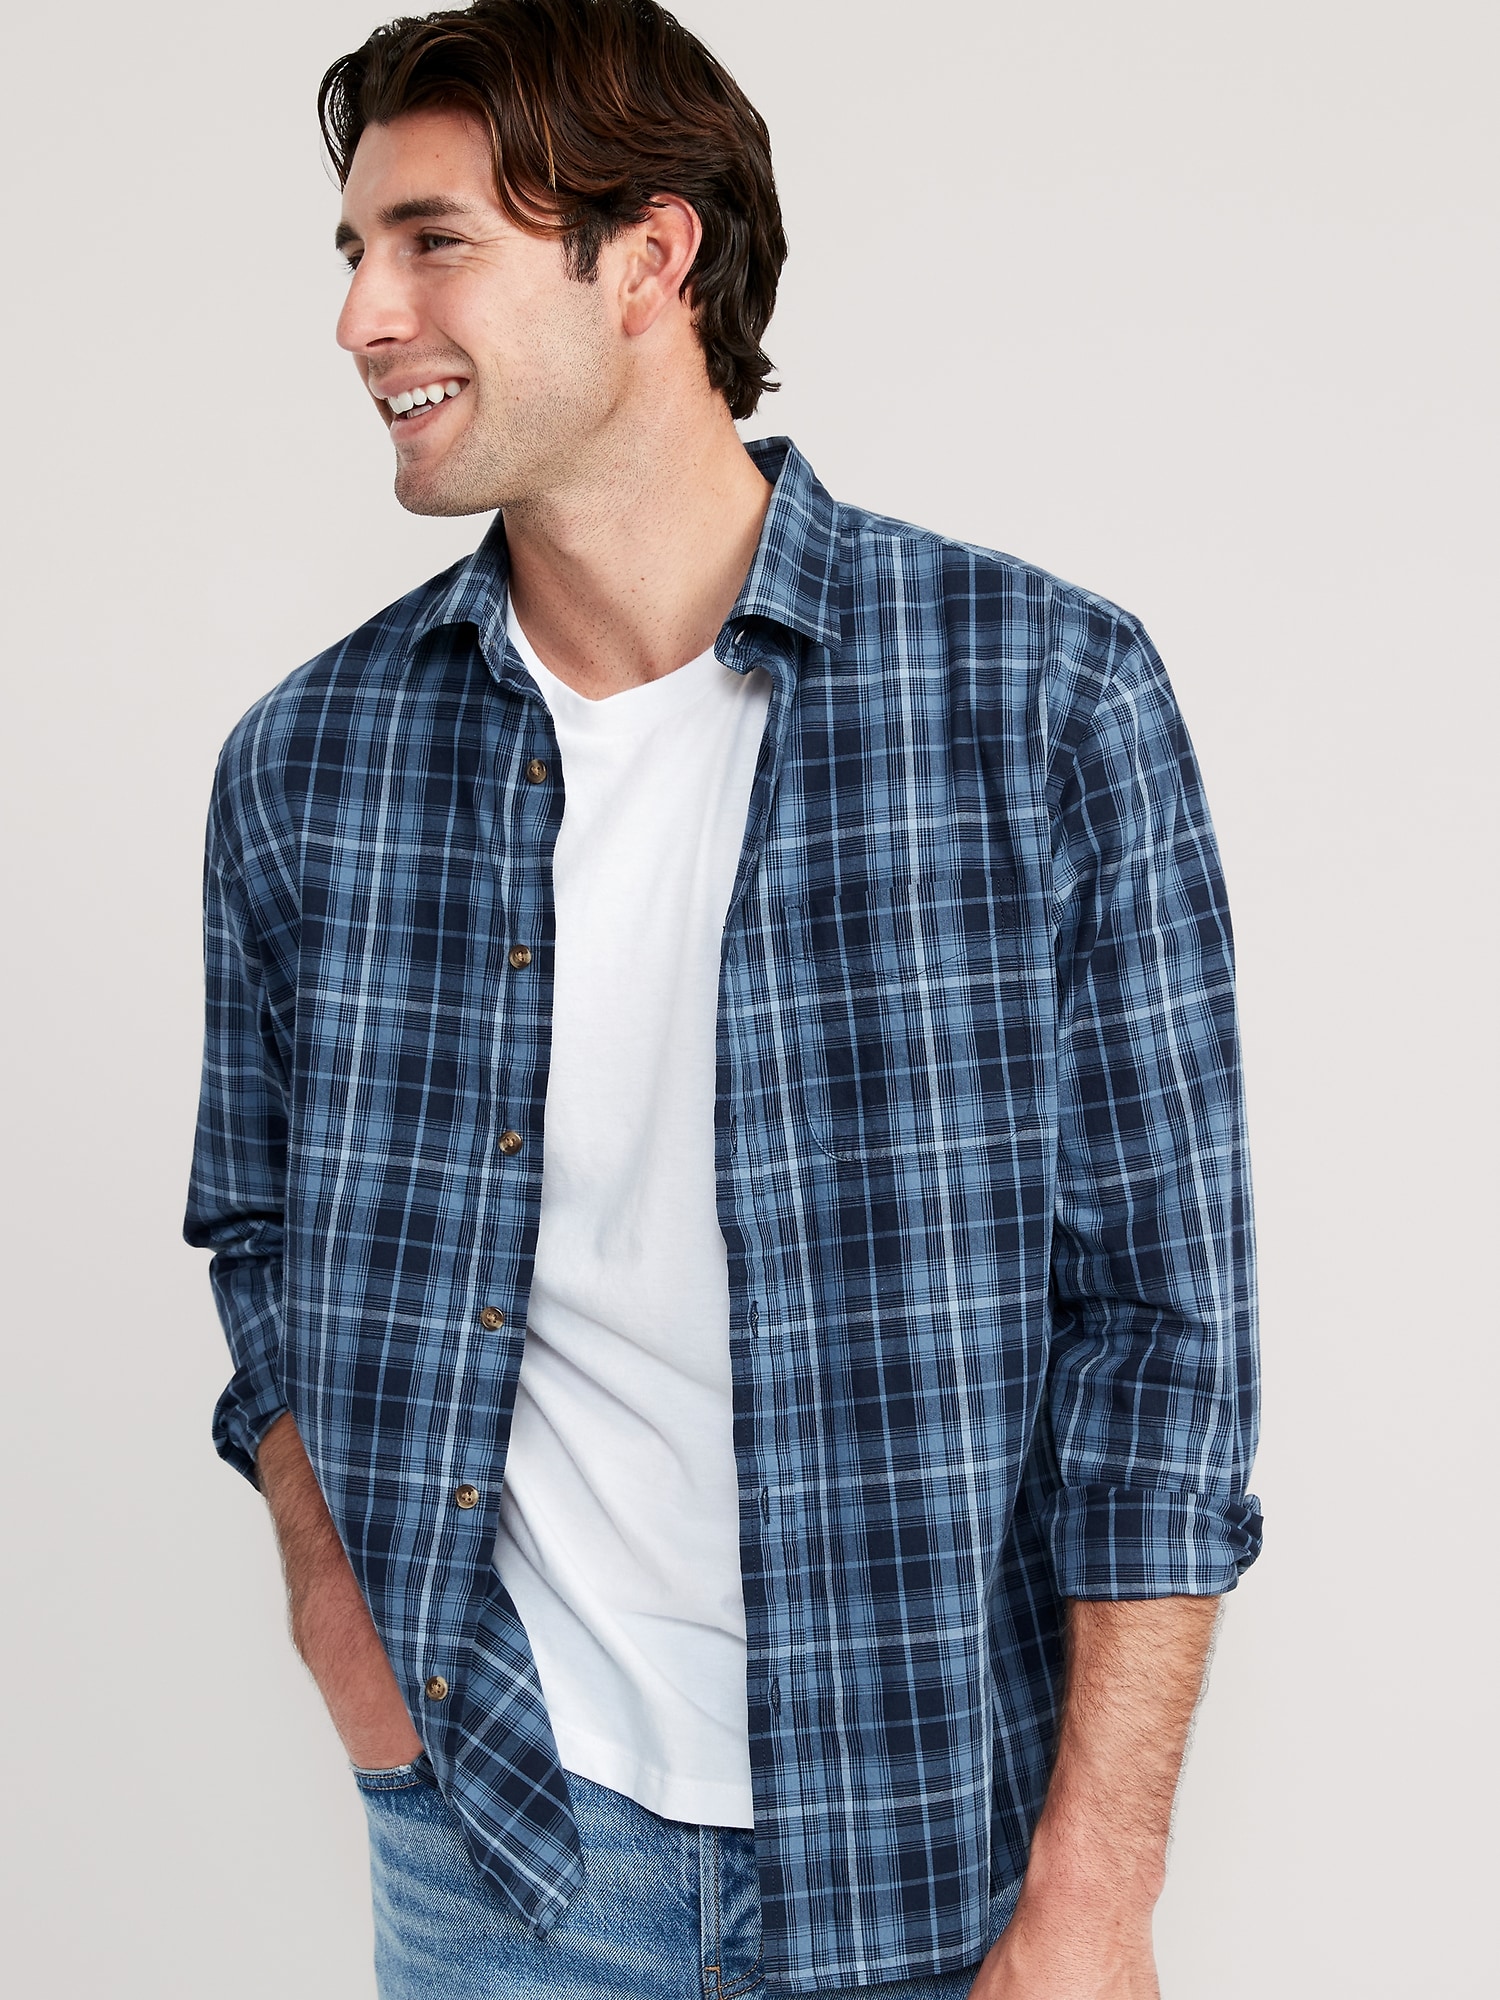 Oldnavy Regular-Fit Built-In Flex Patterned Everyday Shirt for Men